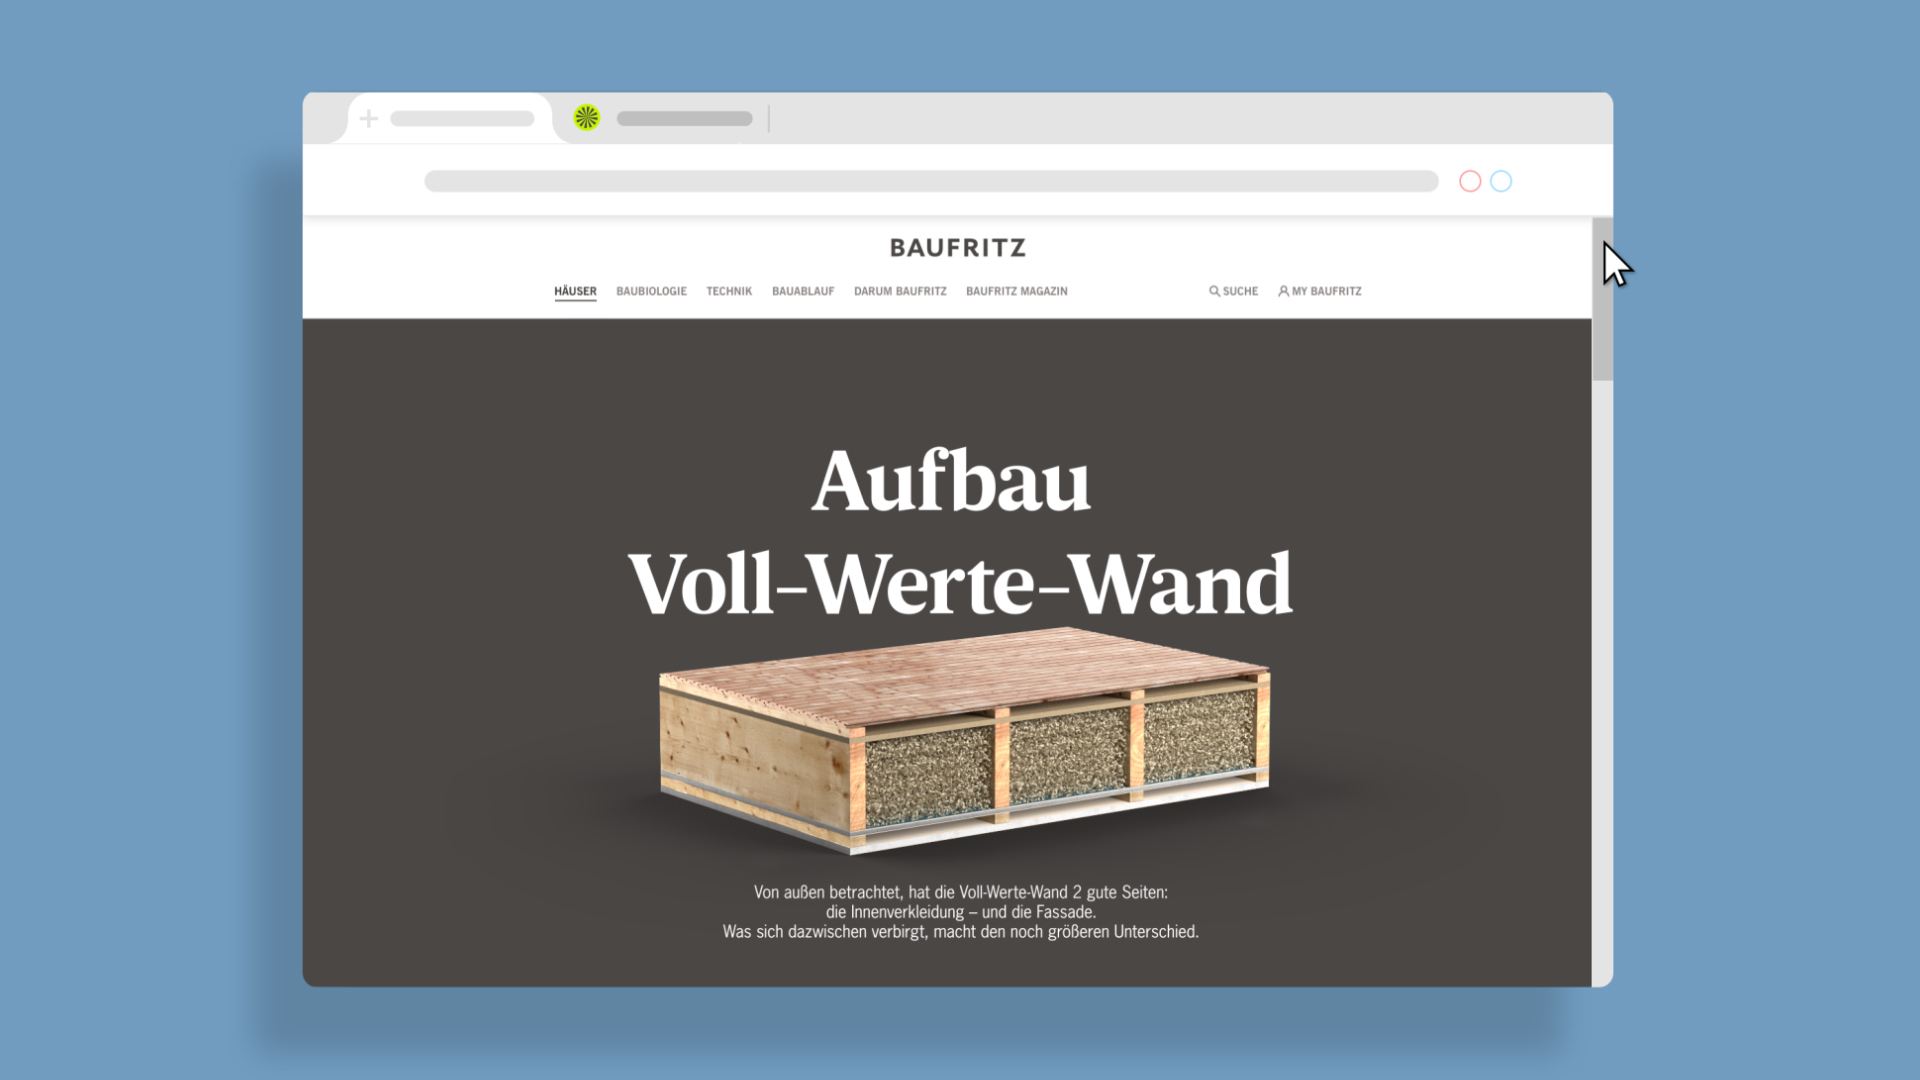 Baufritz Voll-Werte-Wand